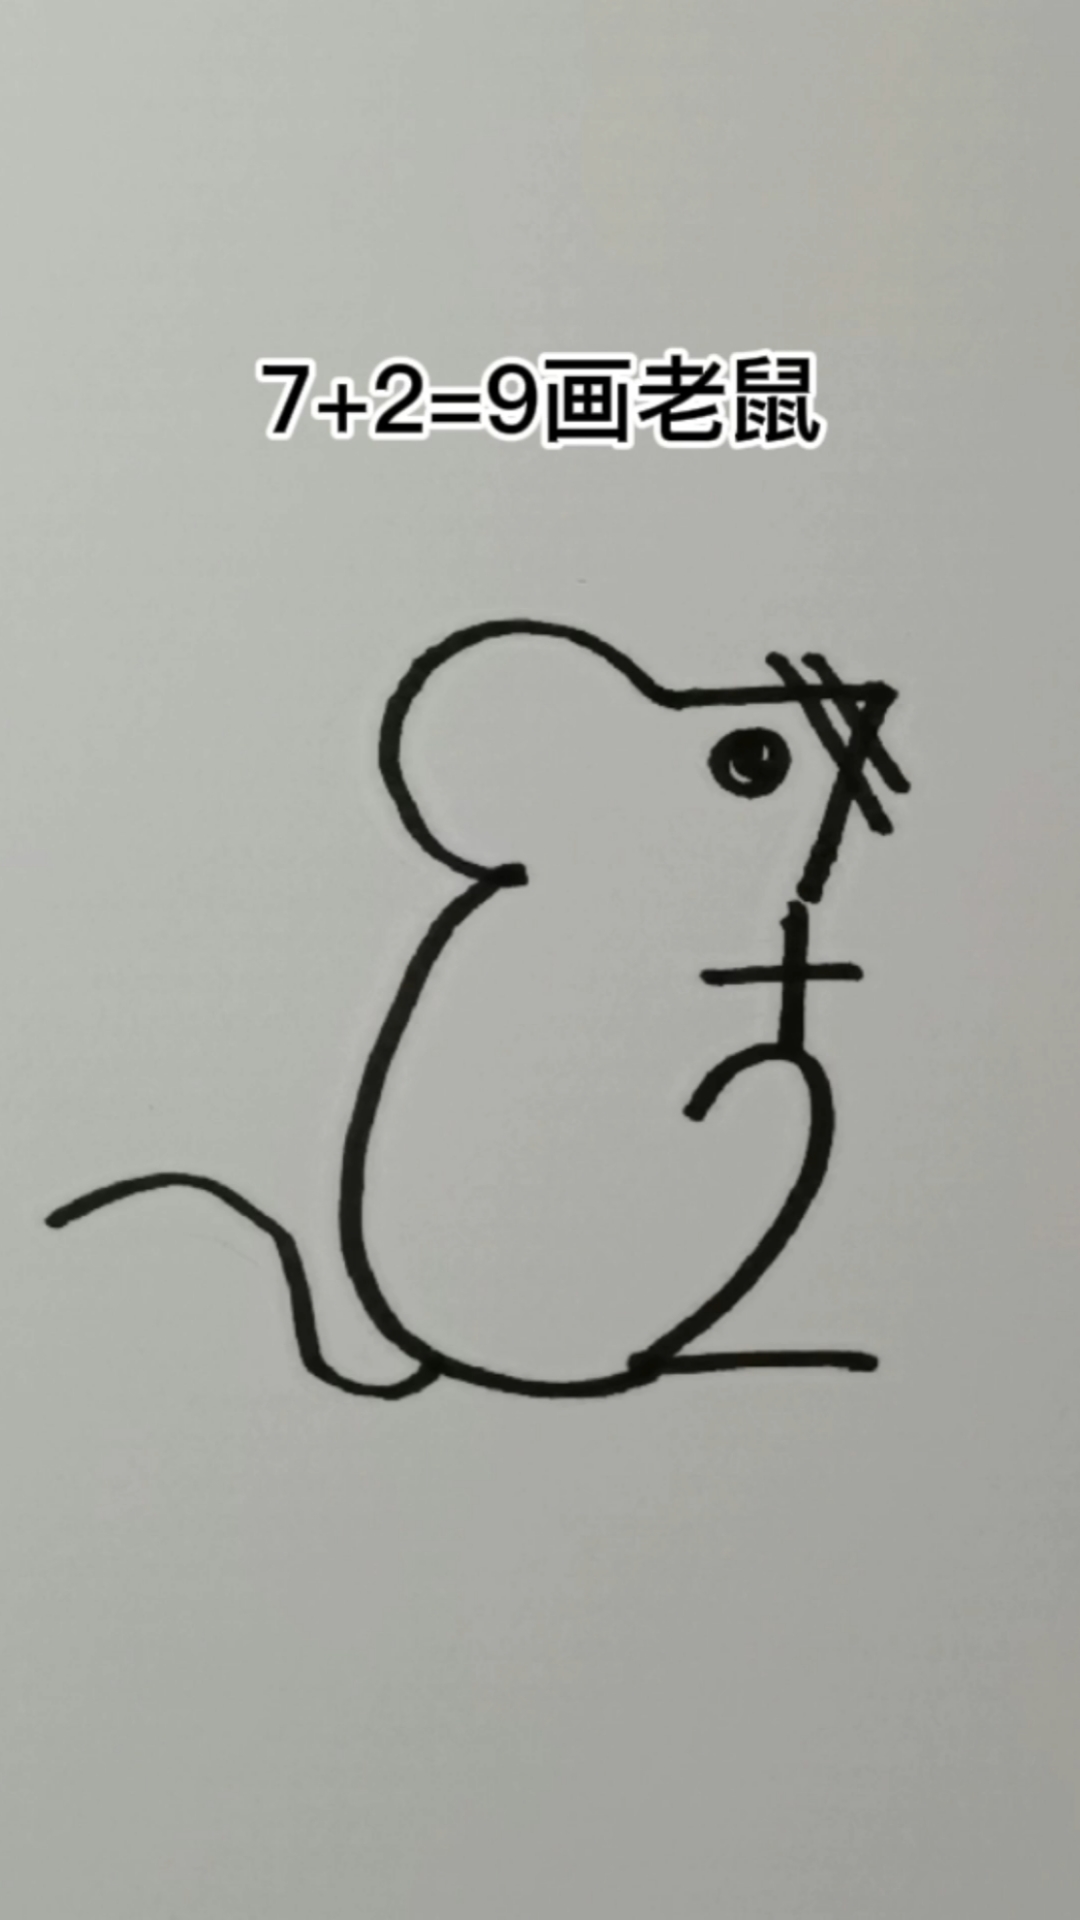 全民最牛手艺人用数字画老鼠